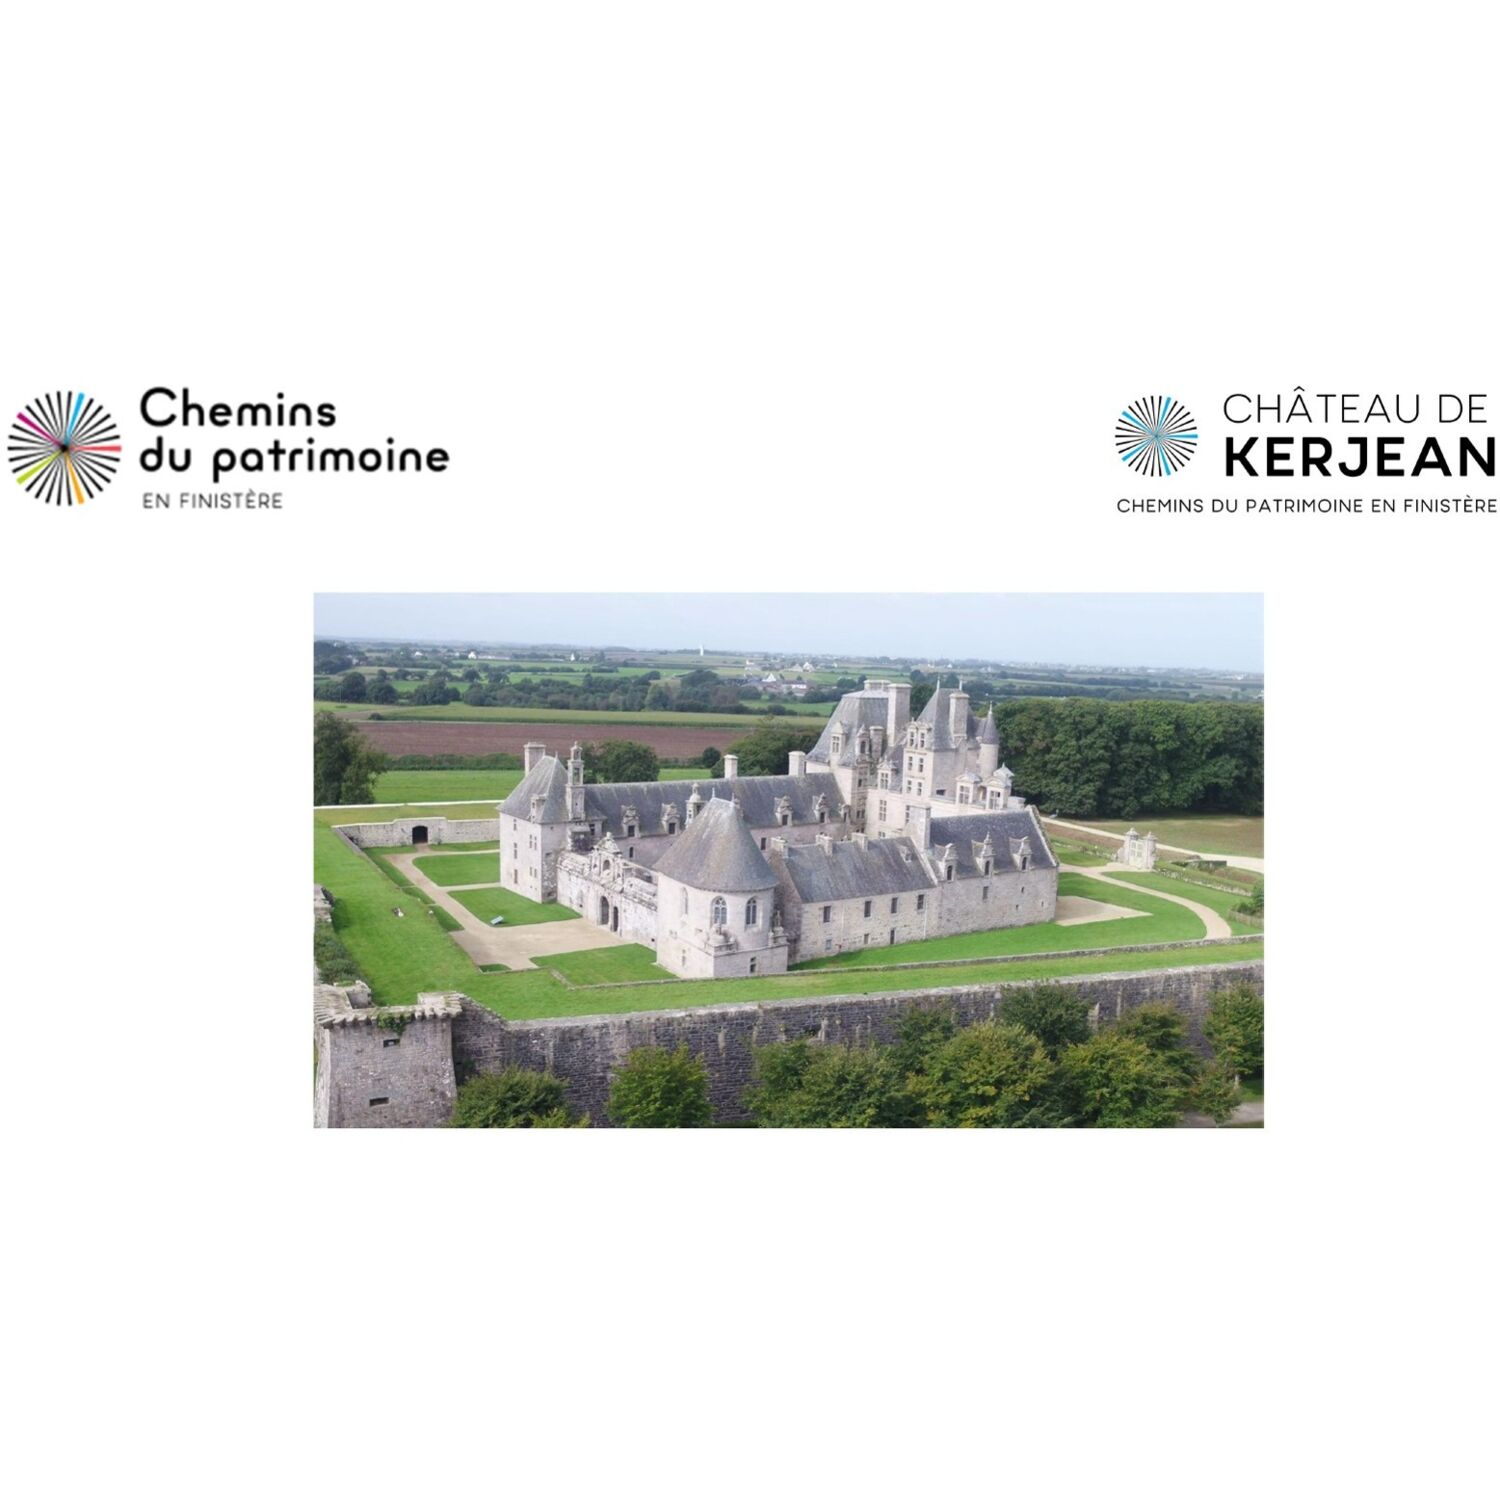 le château de Kerjean à Saint-Vougay (29) recrute des saisonniers